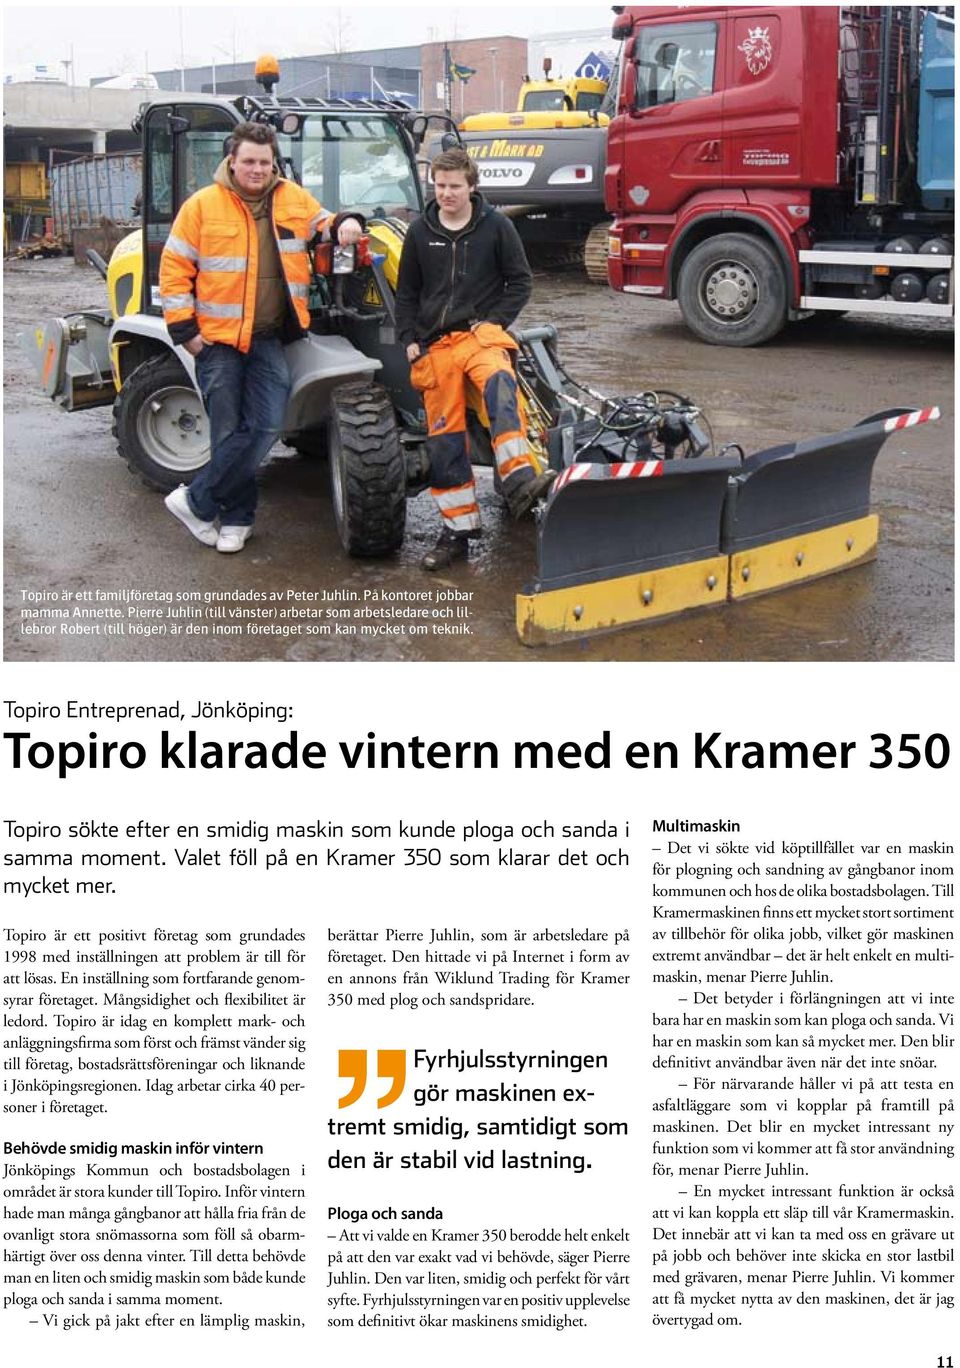 Topiro Entreprenad, Jönköping: Topiro klarade vintern med en Kramer 350 Topiro sökte efter en smidig maskin som kunde ploga och sanda i samma moment.